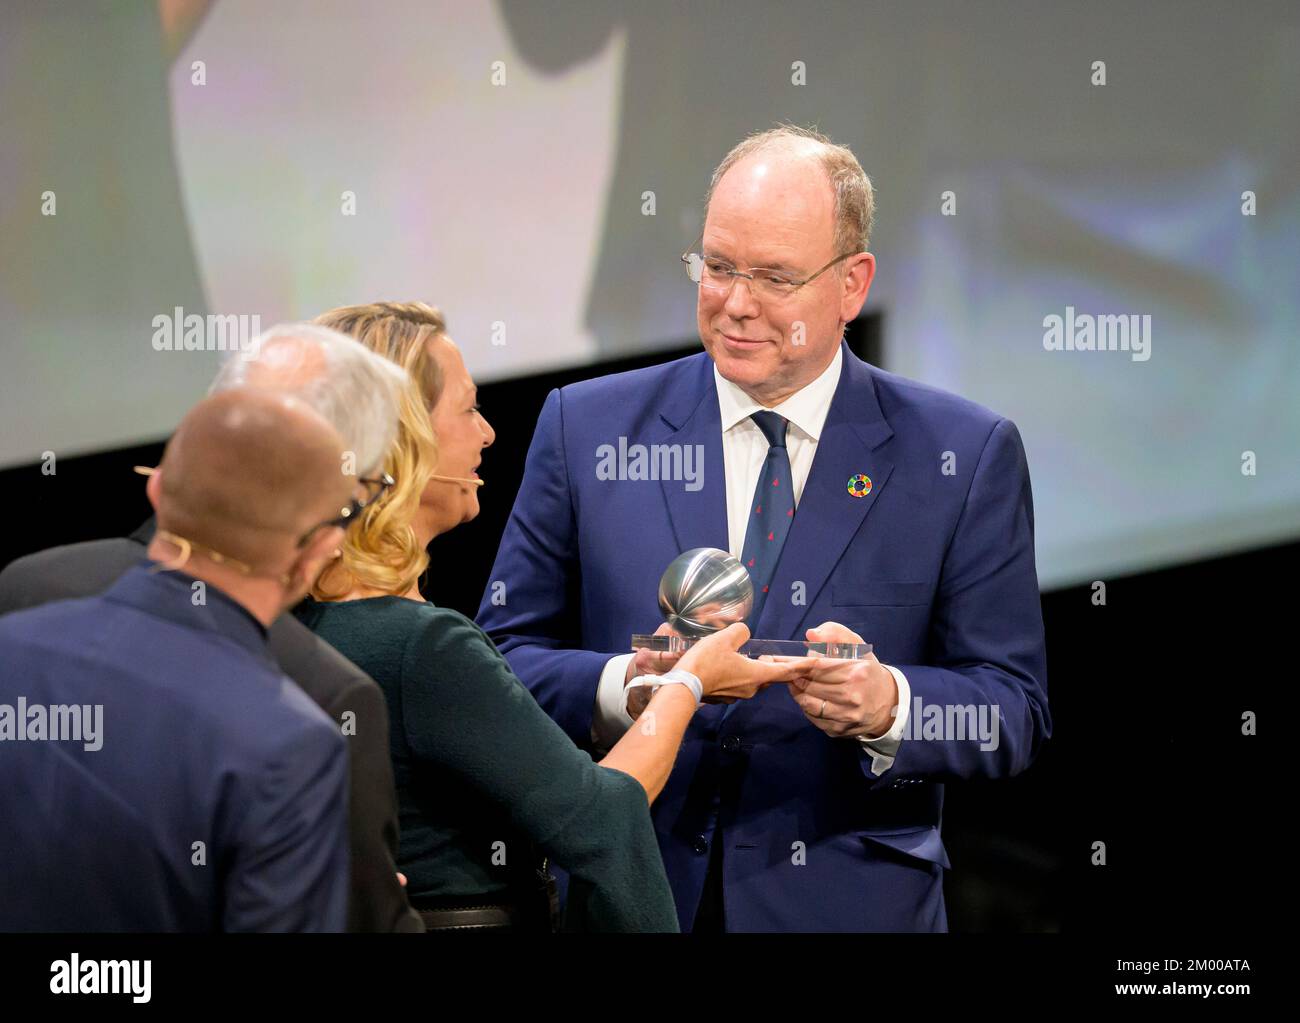 Le SD Prince Albert II de Monaco, lauréat d'un prix honorifique, reçoit son prix du Professeur Antje BOETIUS, Directeur de l'Institut Alfred Wegener, remise du Prix de développement durable allemand sur 2 décembre 2022 à Düsseldorf/Allemagne. Banque D'Images